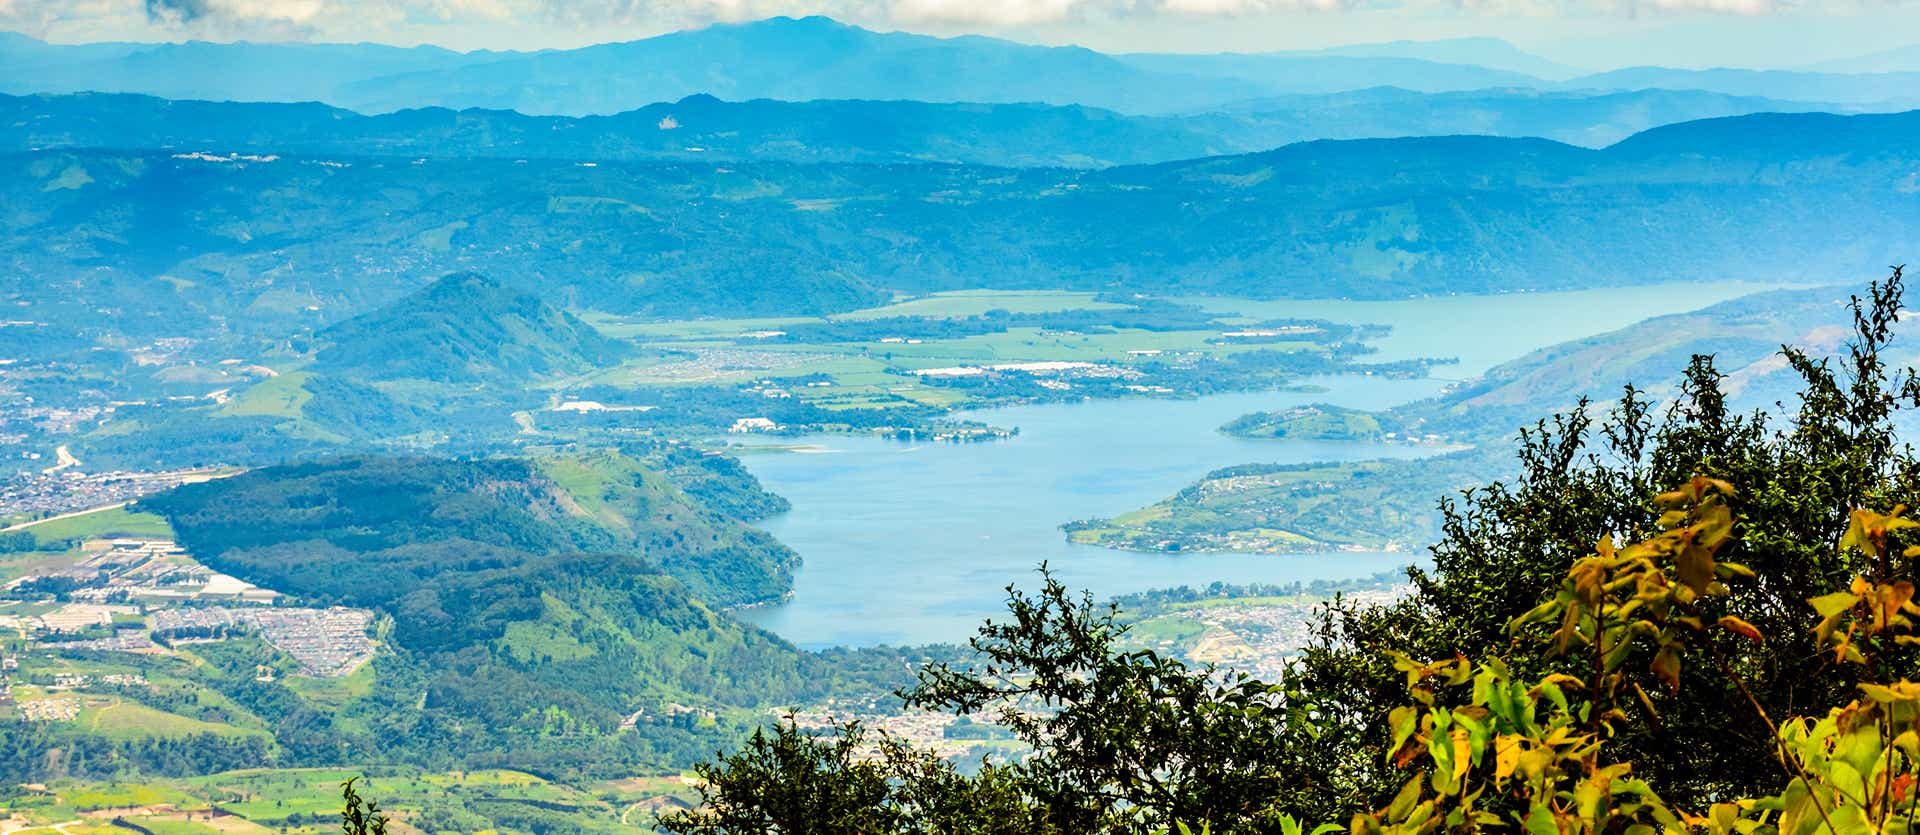 View from Corazón de Agua Trail <span class="iconos separador"></span> Lake Atitlan <span class="iconos separador"></span> Guatemala